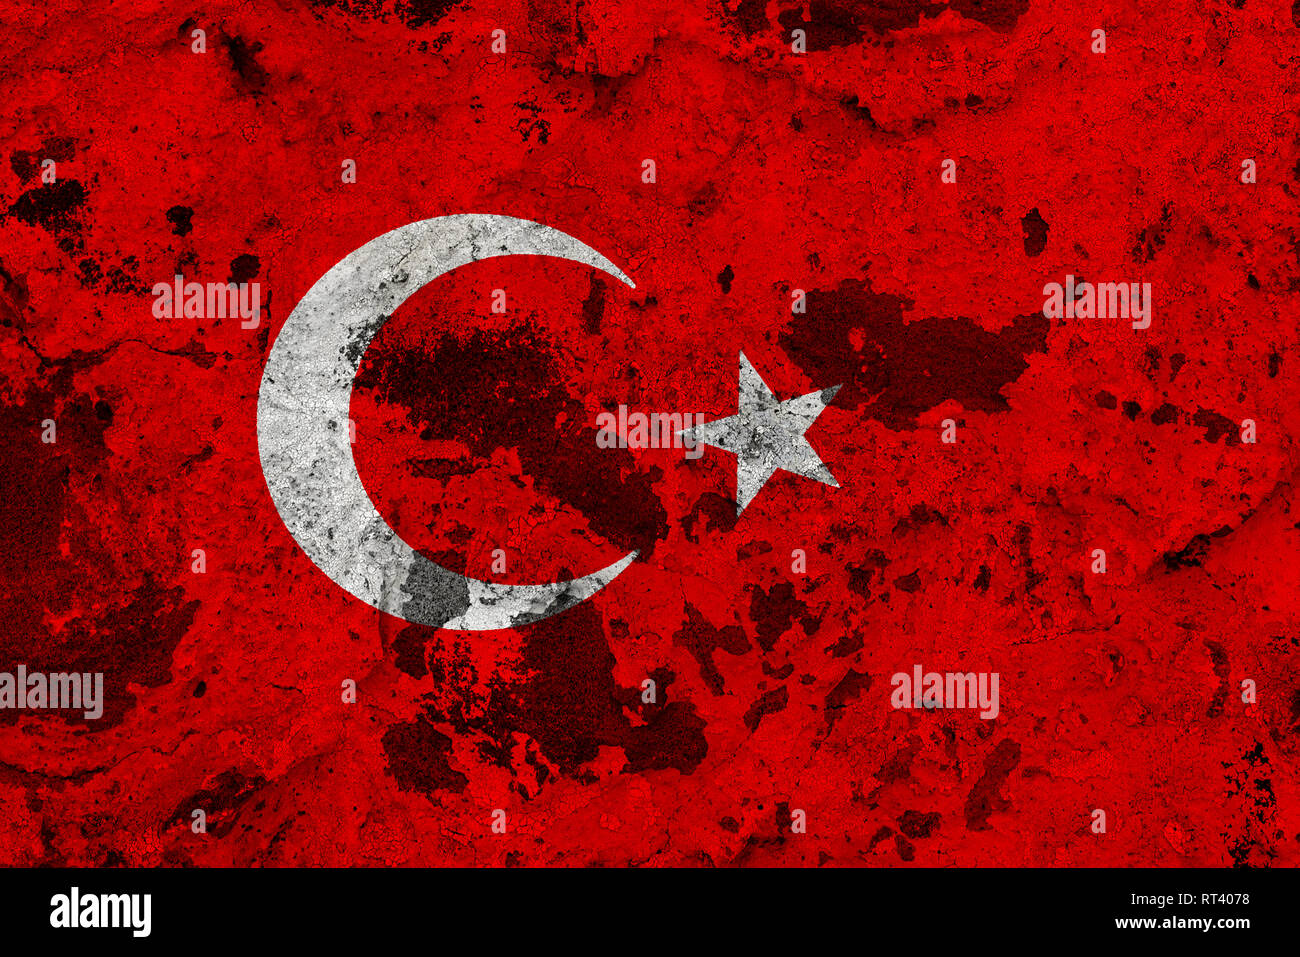 Turkei Flagge Auf Alte Mauer Patriotische Grunge Hintergrund Die Flagge Der Turkei Stockfotografie Alamy